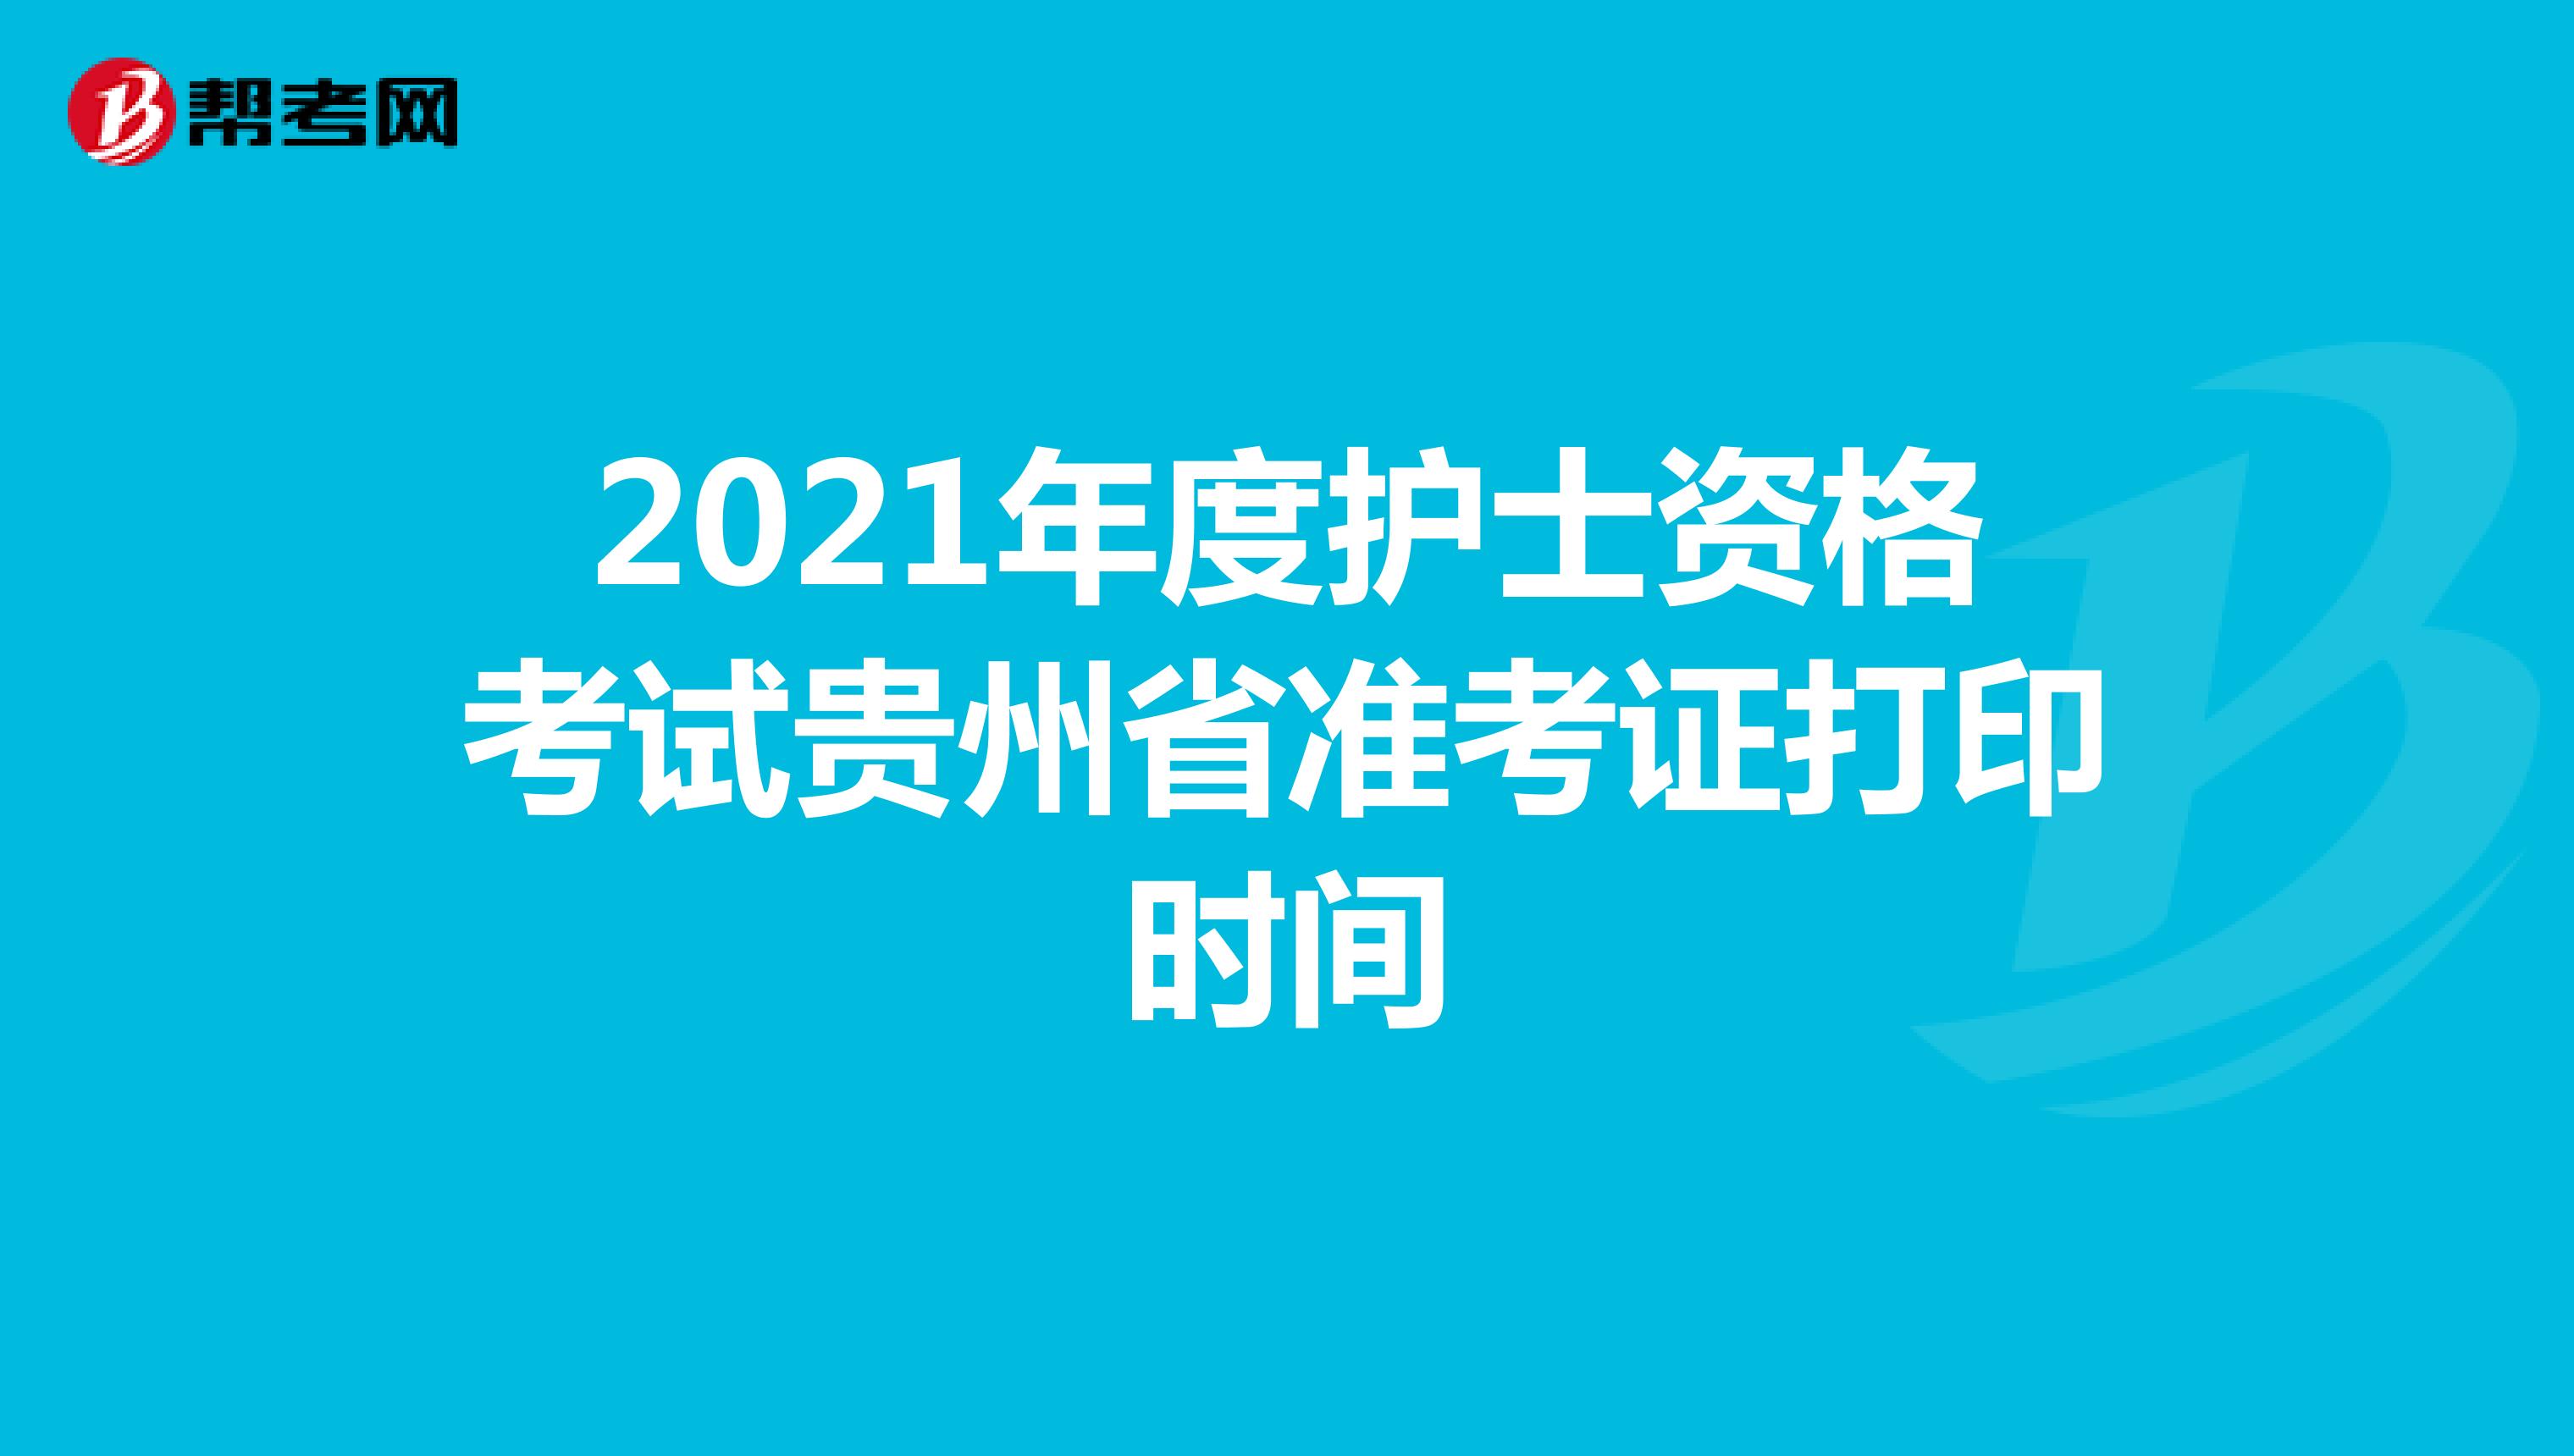 2021年度护士资格考试贵州省准考证打印时间